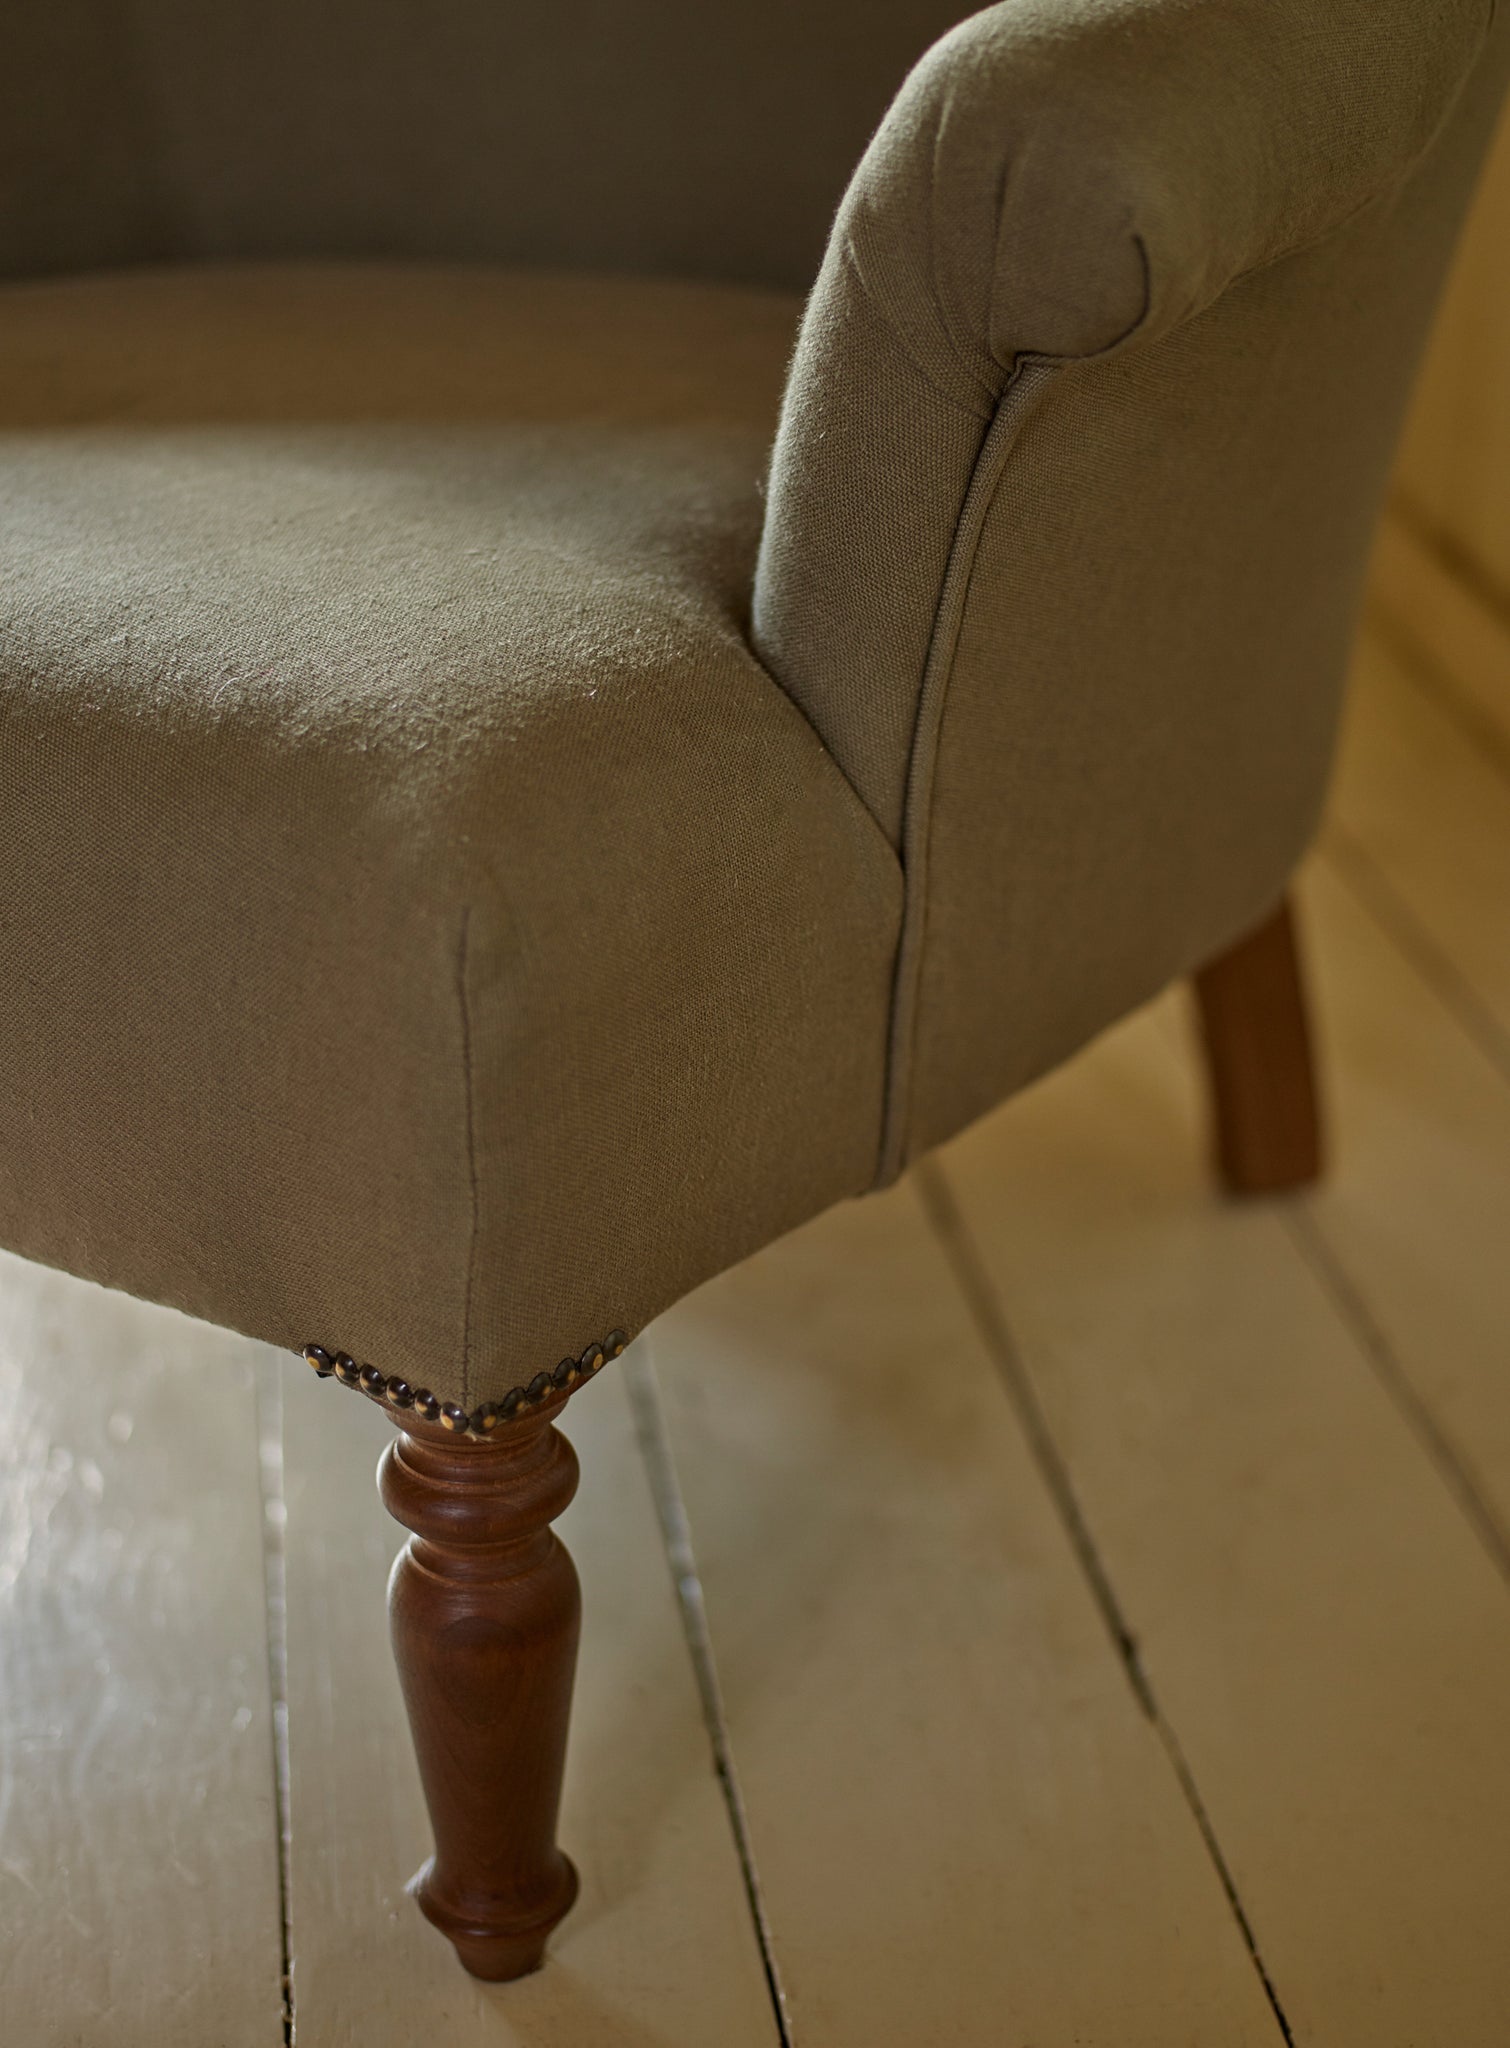 Clandon Armchair, Natural Linen